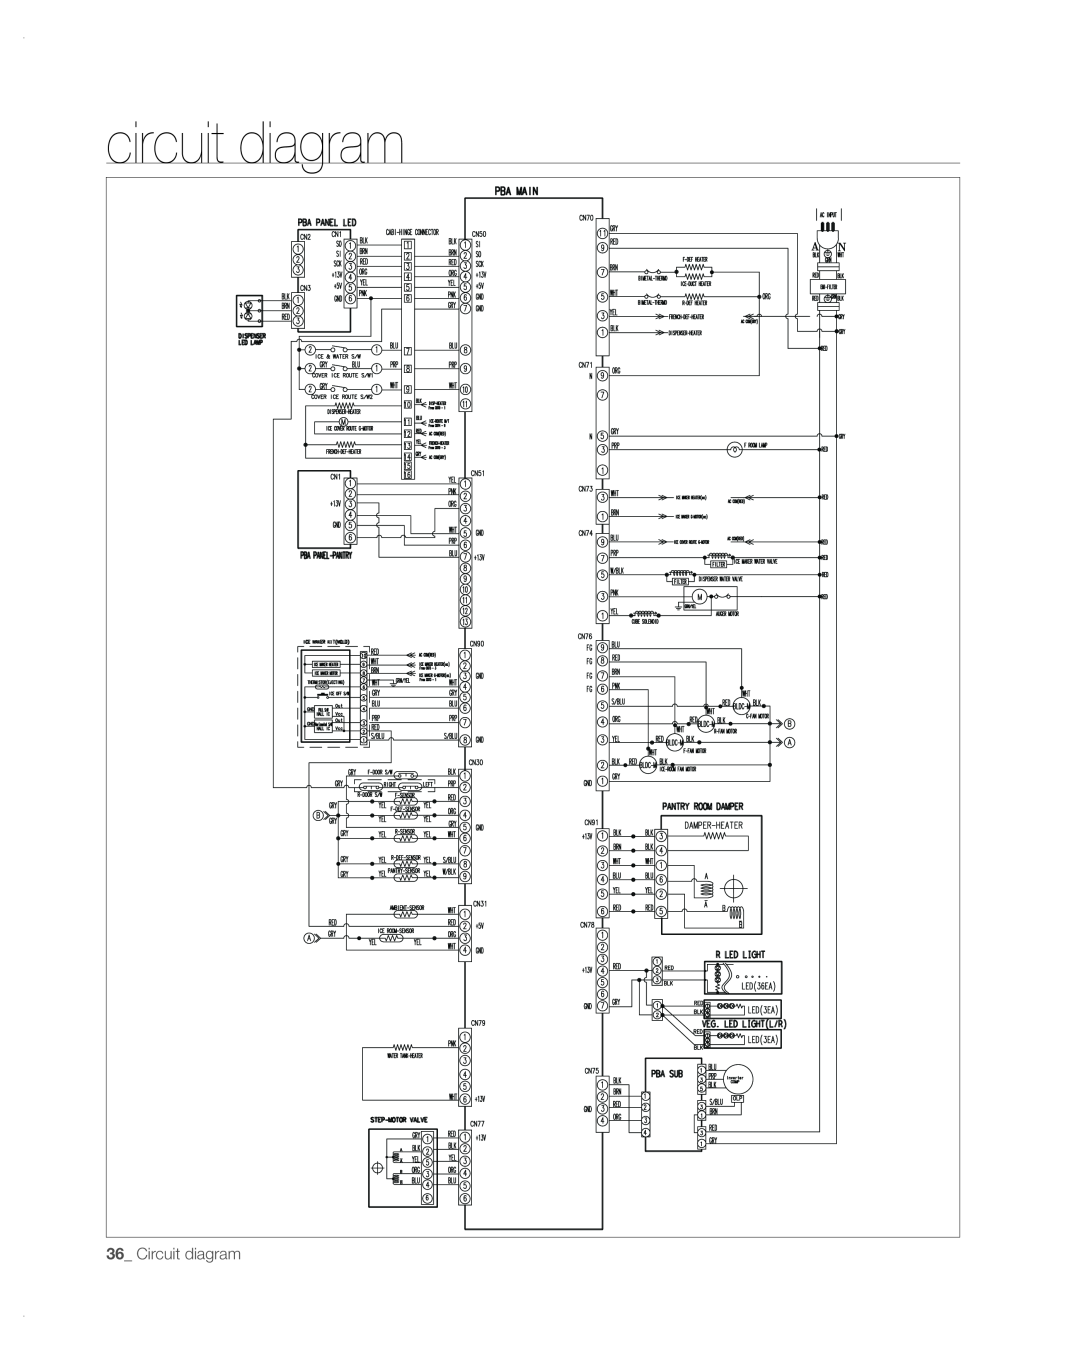 Samsung RFG297AA user manual circuit diagram, Circuit diagram 